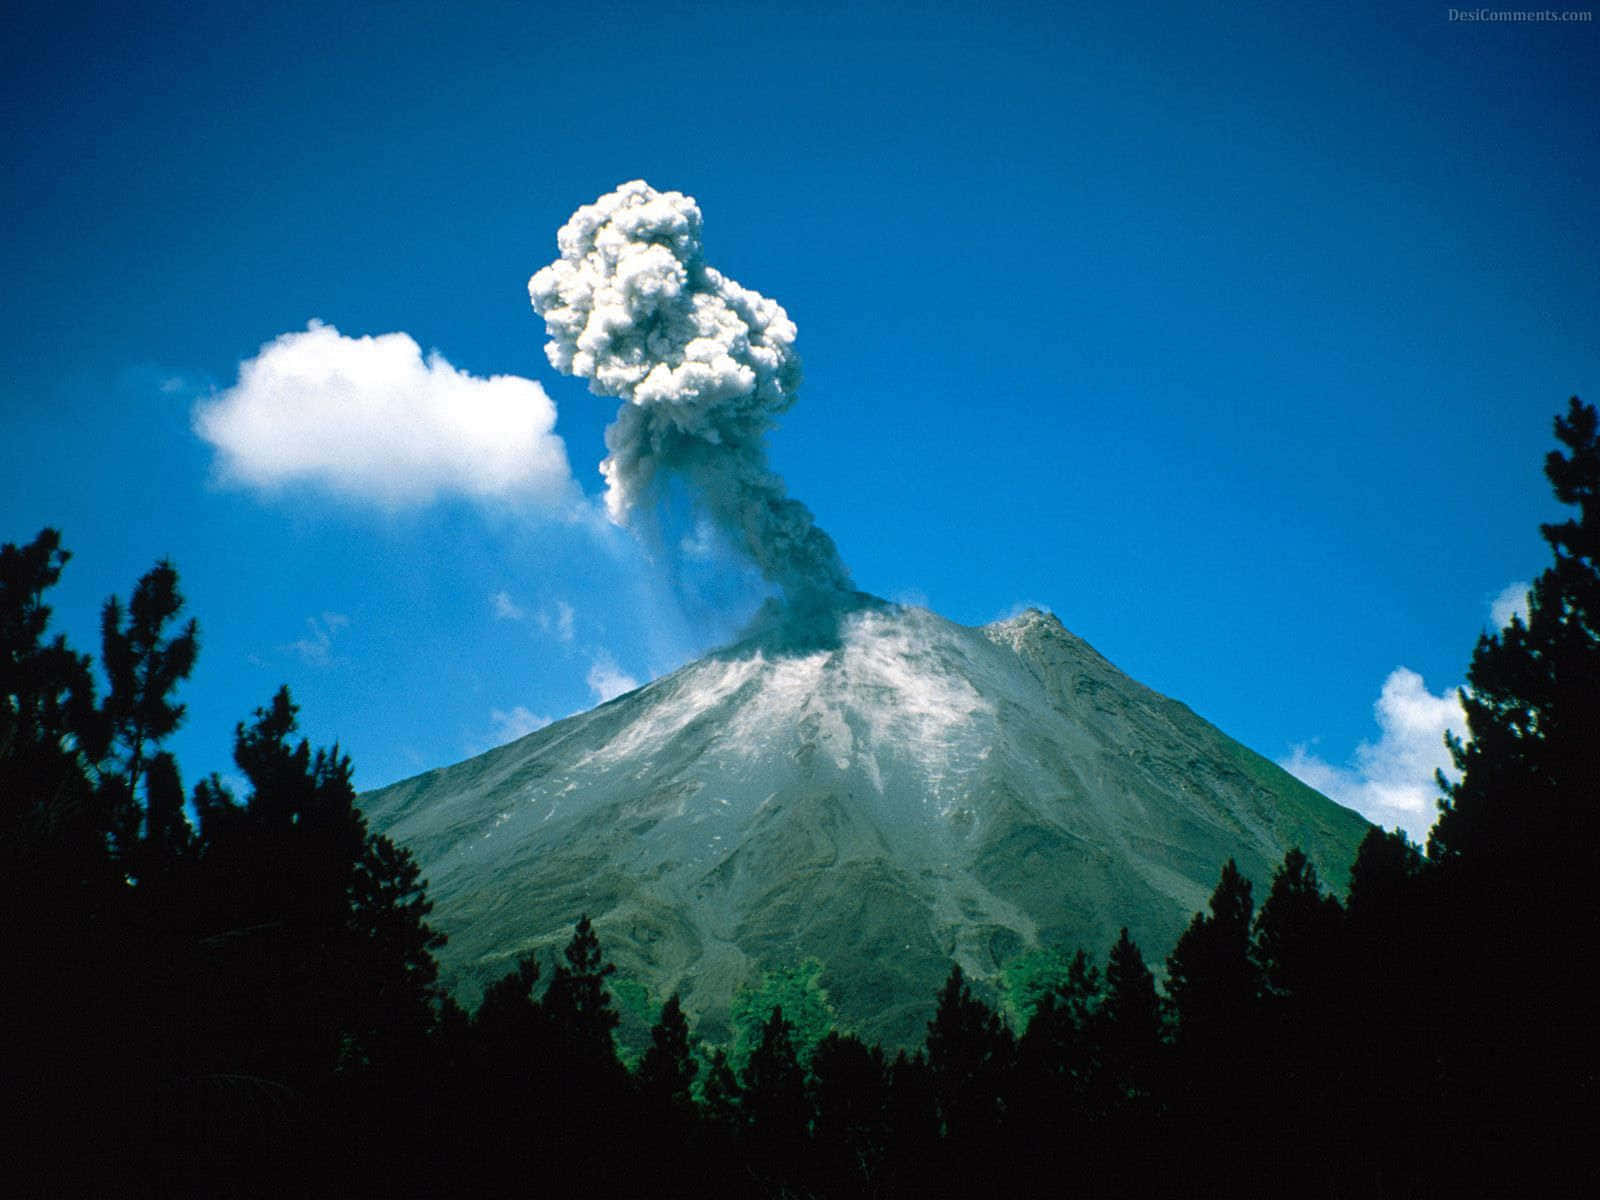 Einfaszinierender Blick Auf Einen Aktiven Vulkan.